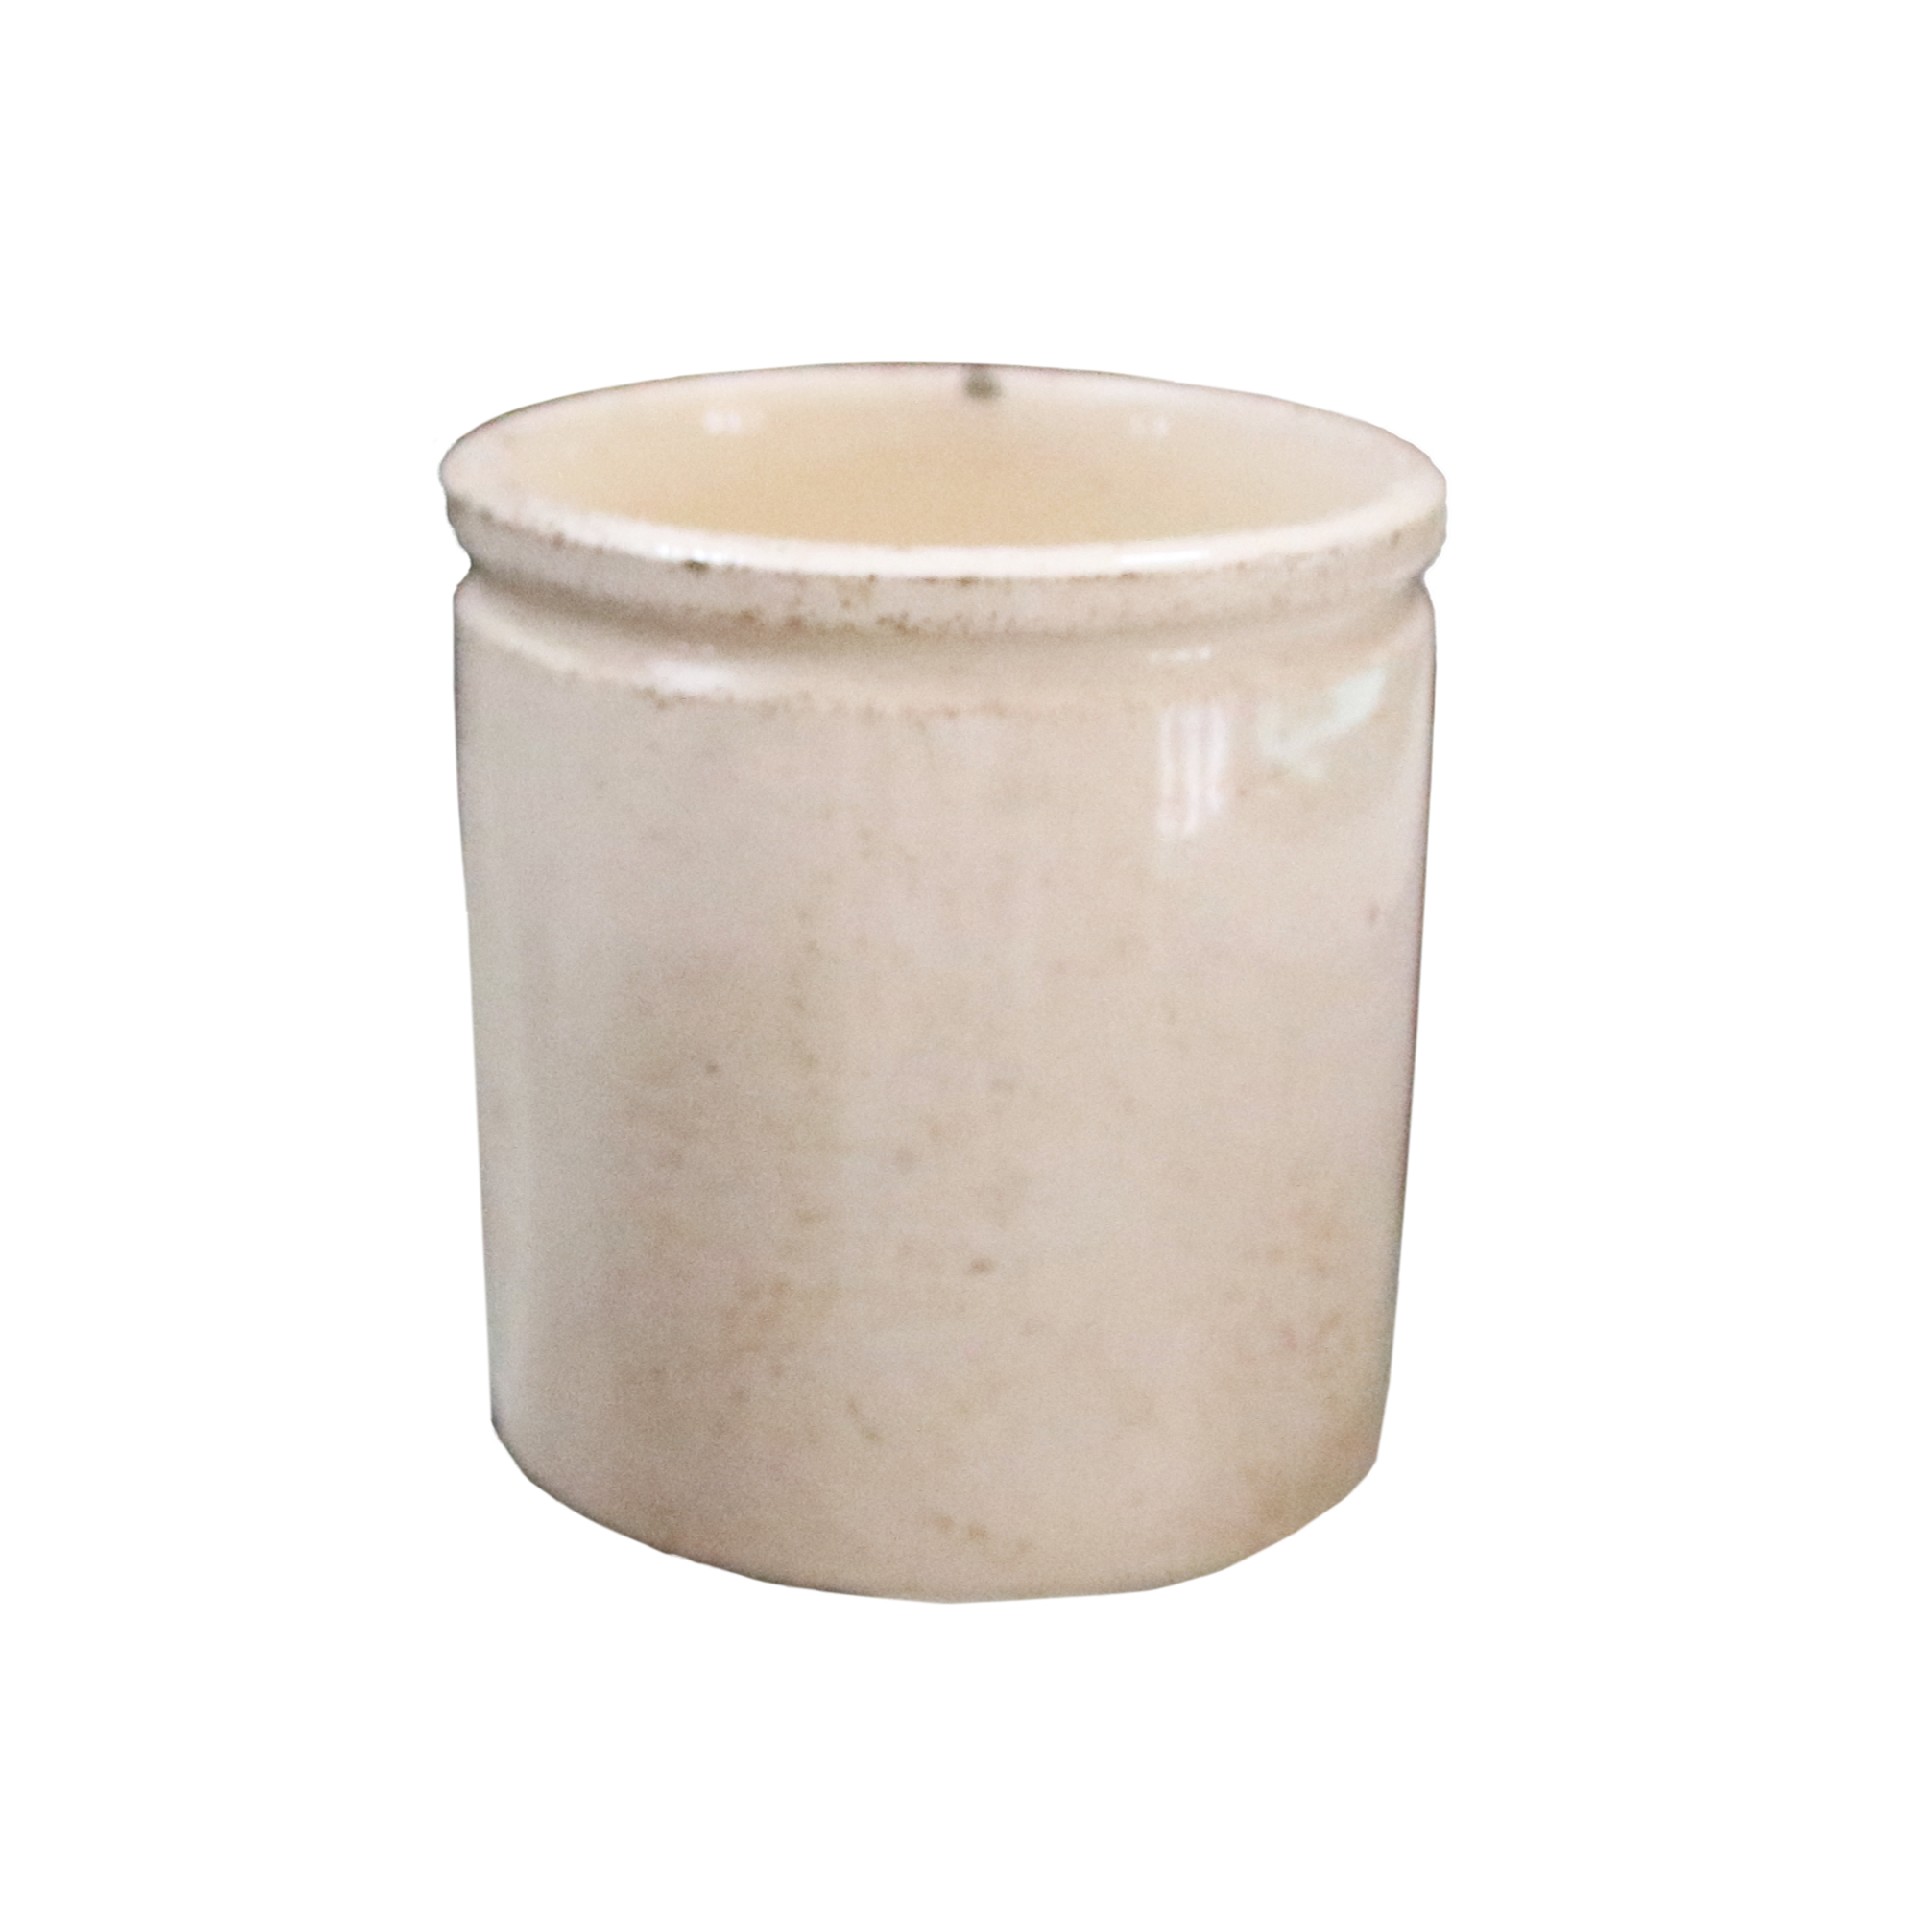 Antico vasetto smaltato - Ceramiche - Oggettistica - Prodotti - Antichità Fiorillo